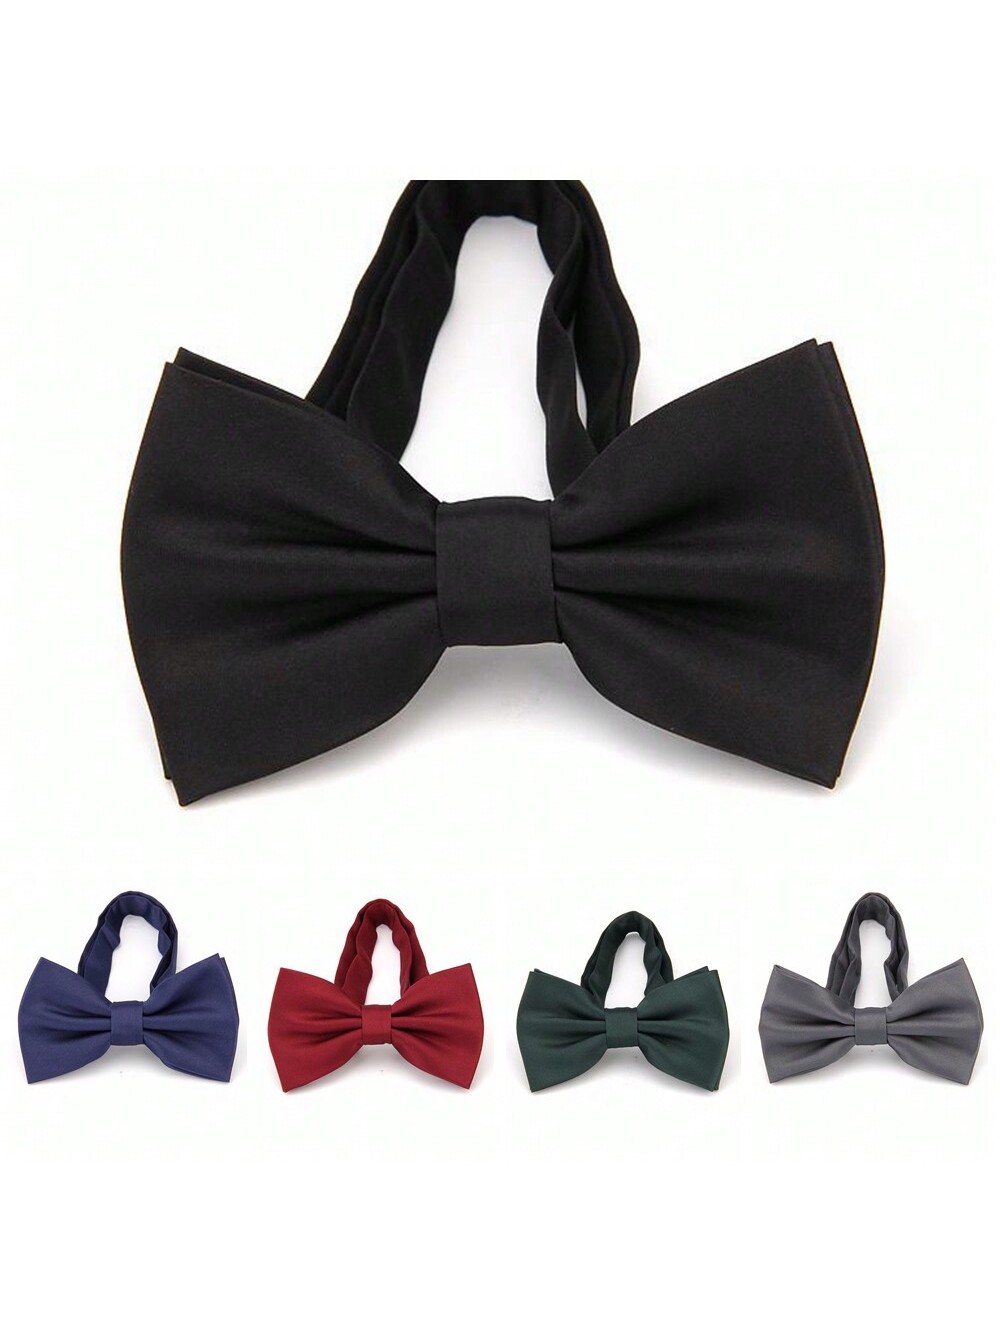 Модный мужской двухслойный однотонный галстук-бабочка, многоцветный классический мужской галстук 8 см свадебные галстуки галстук бабочка из полиэстера в черный горошек модный деловой галстук бабочка аксес